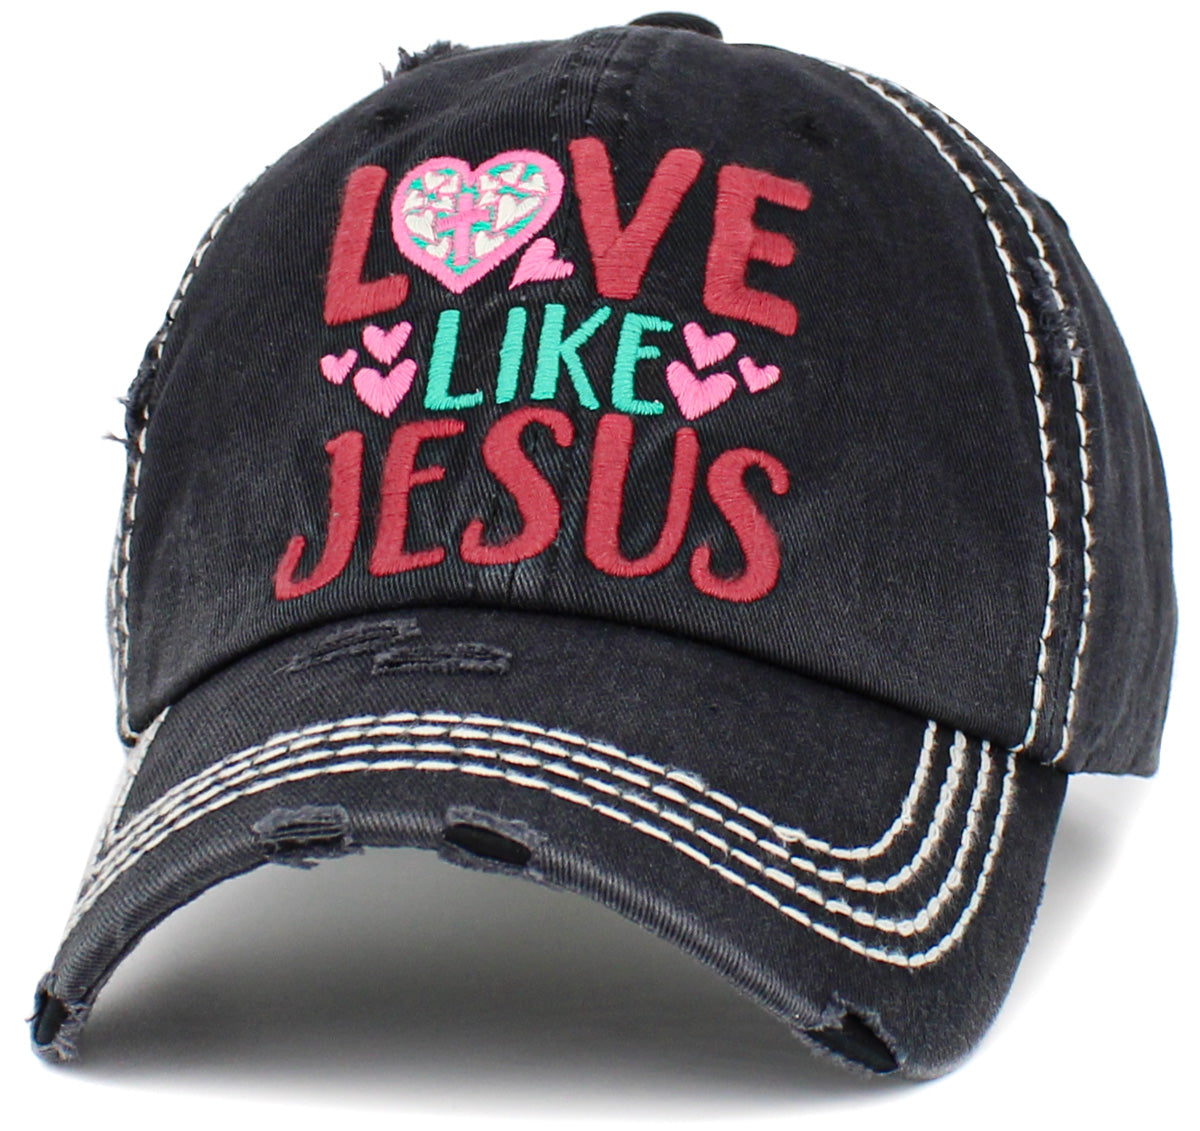 KBV1444 "Love Like Jesus" Washed Vintage Ballcap